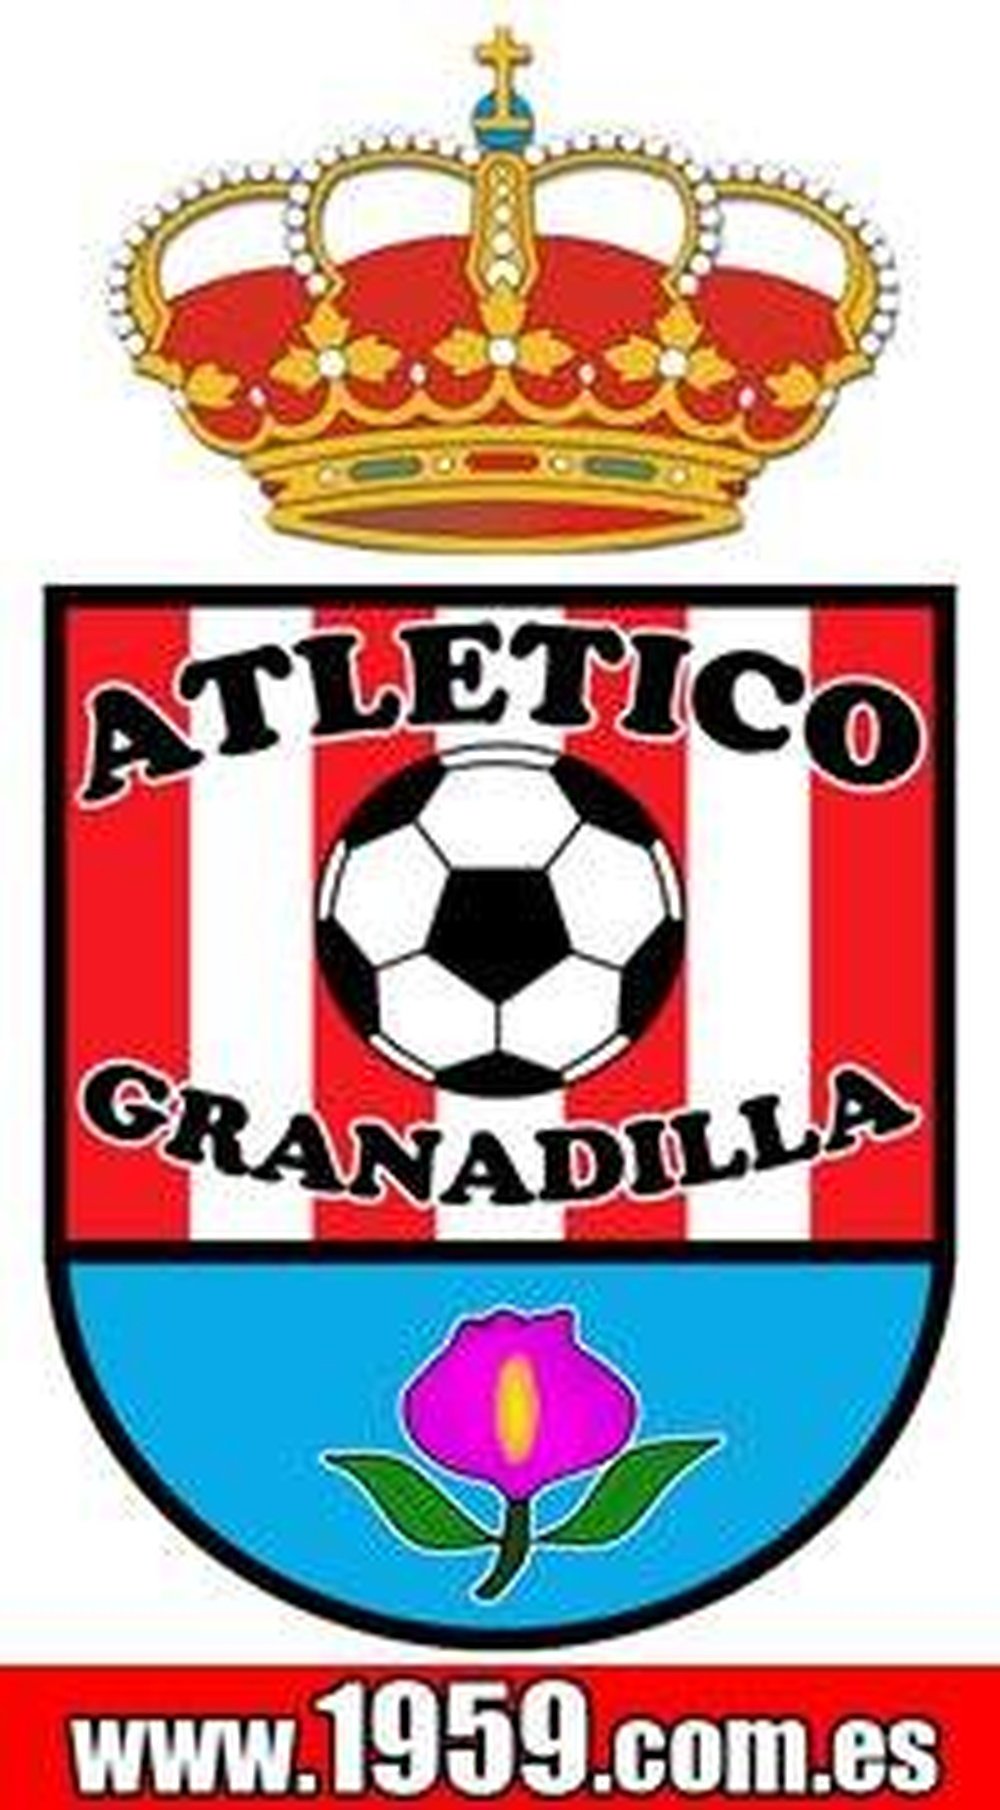 Escudo del Atlético Granadilla. Facebook